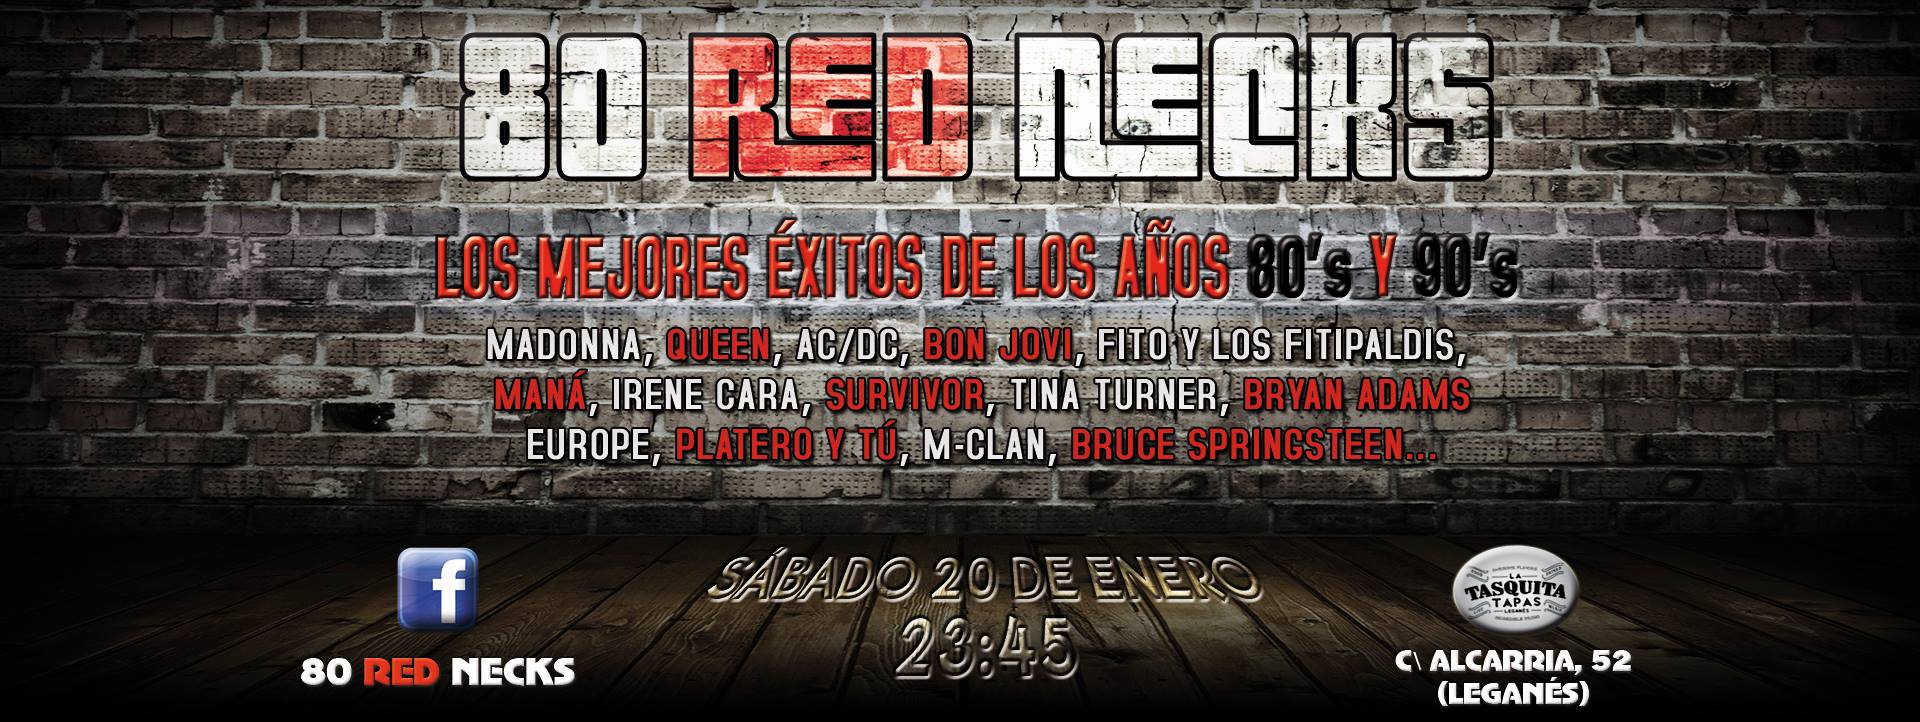 80 Red Necks - Concierto Sábado 20 Enero (La Tasquita)